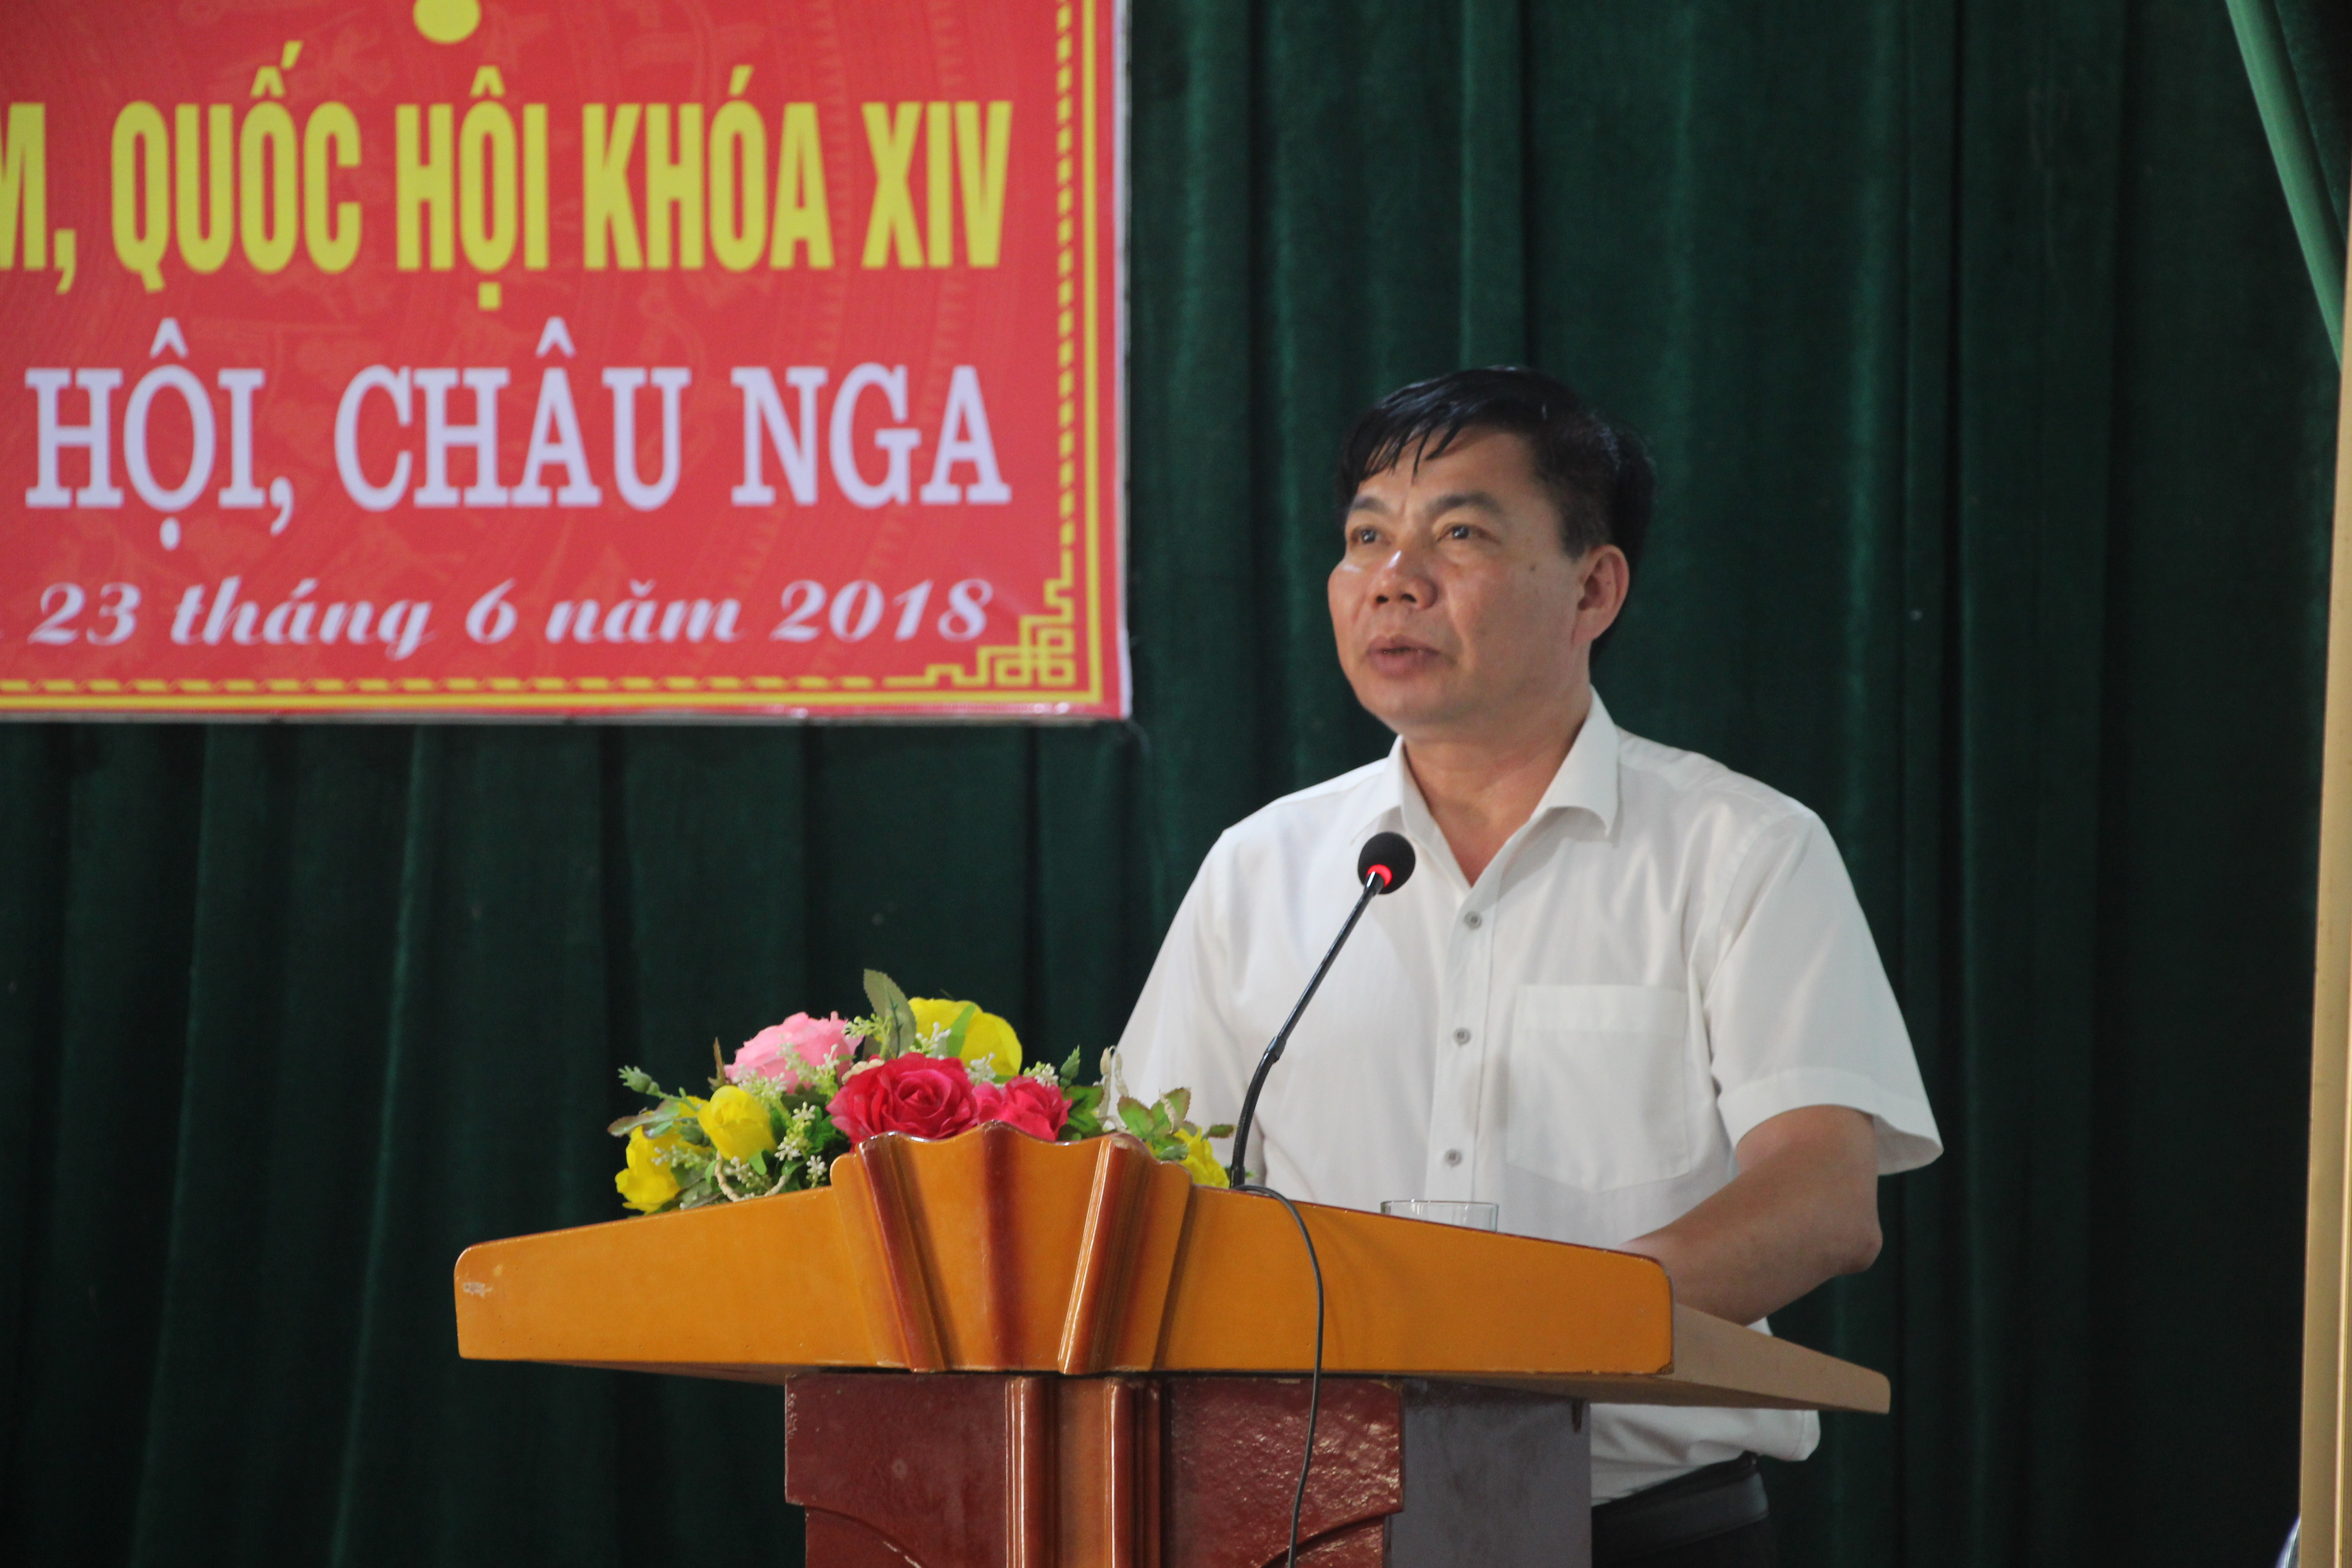 Ông Ngô Đức Thuận - Chủ tịch UBND huyện Quỳ Châu giải thích một số vấn đề với cử tri tại buổi tiếp xúc. Ảnh: Đào Tuấn 